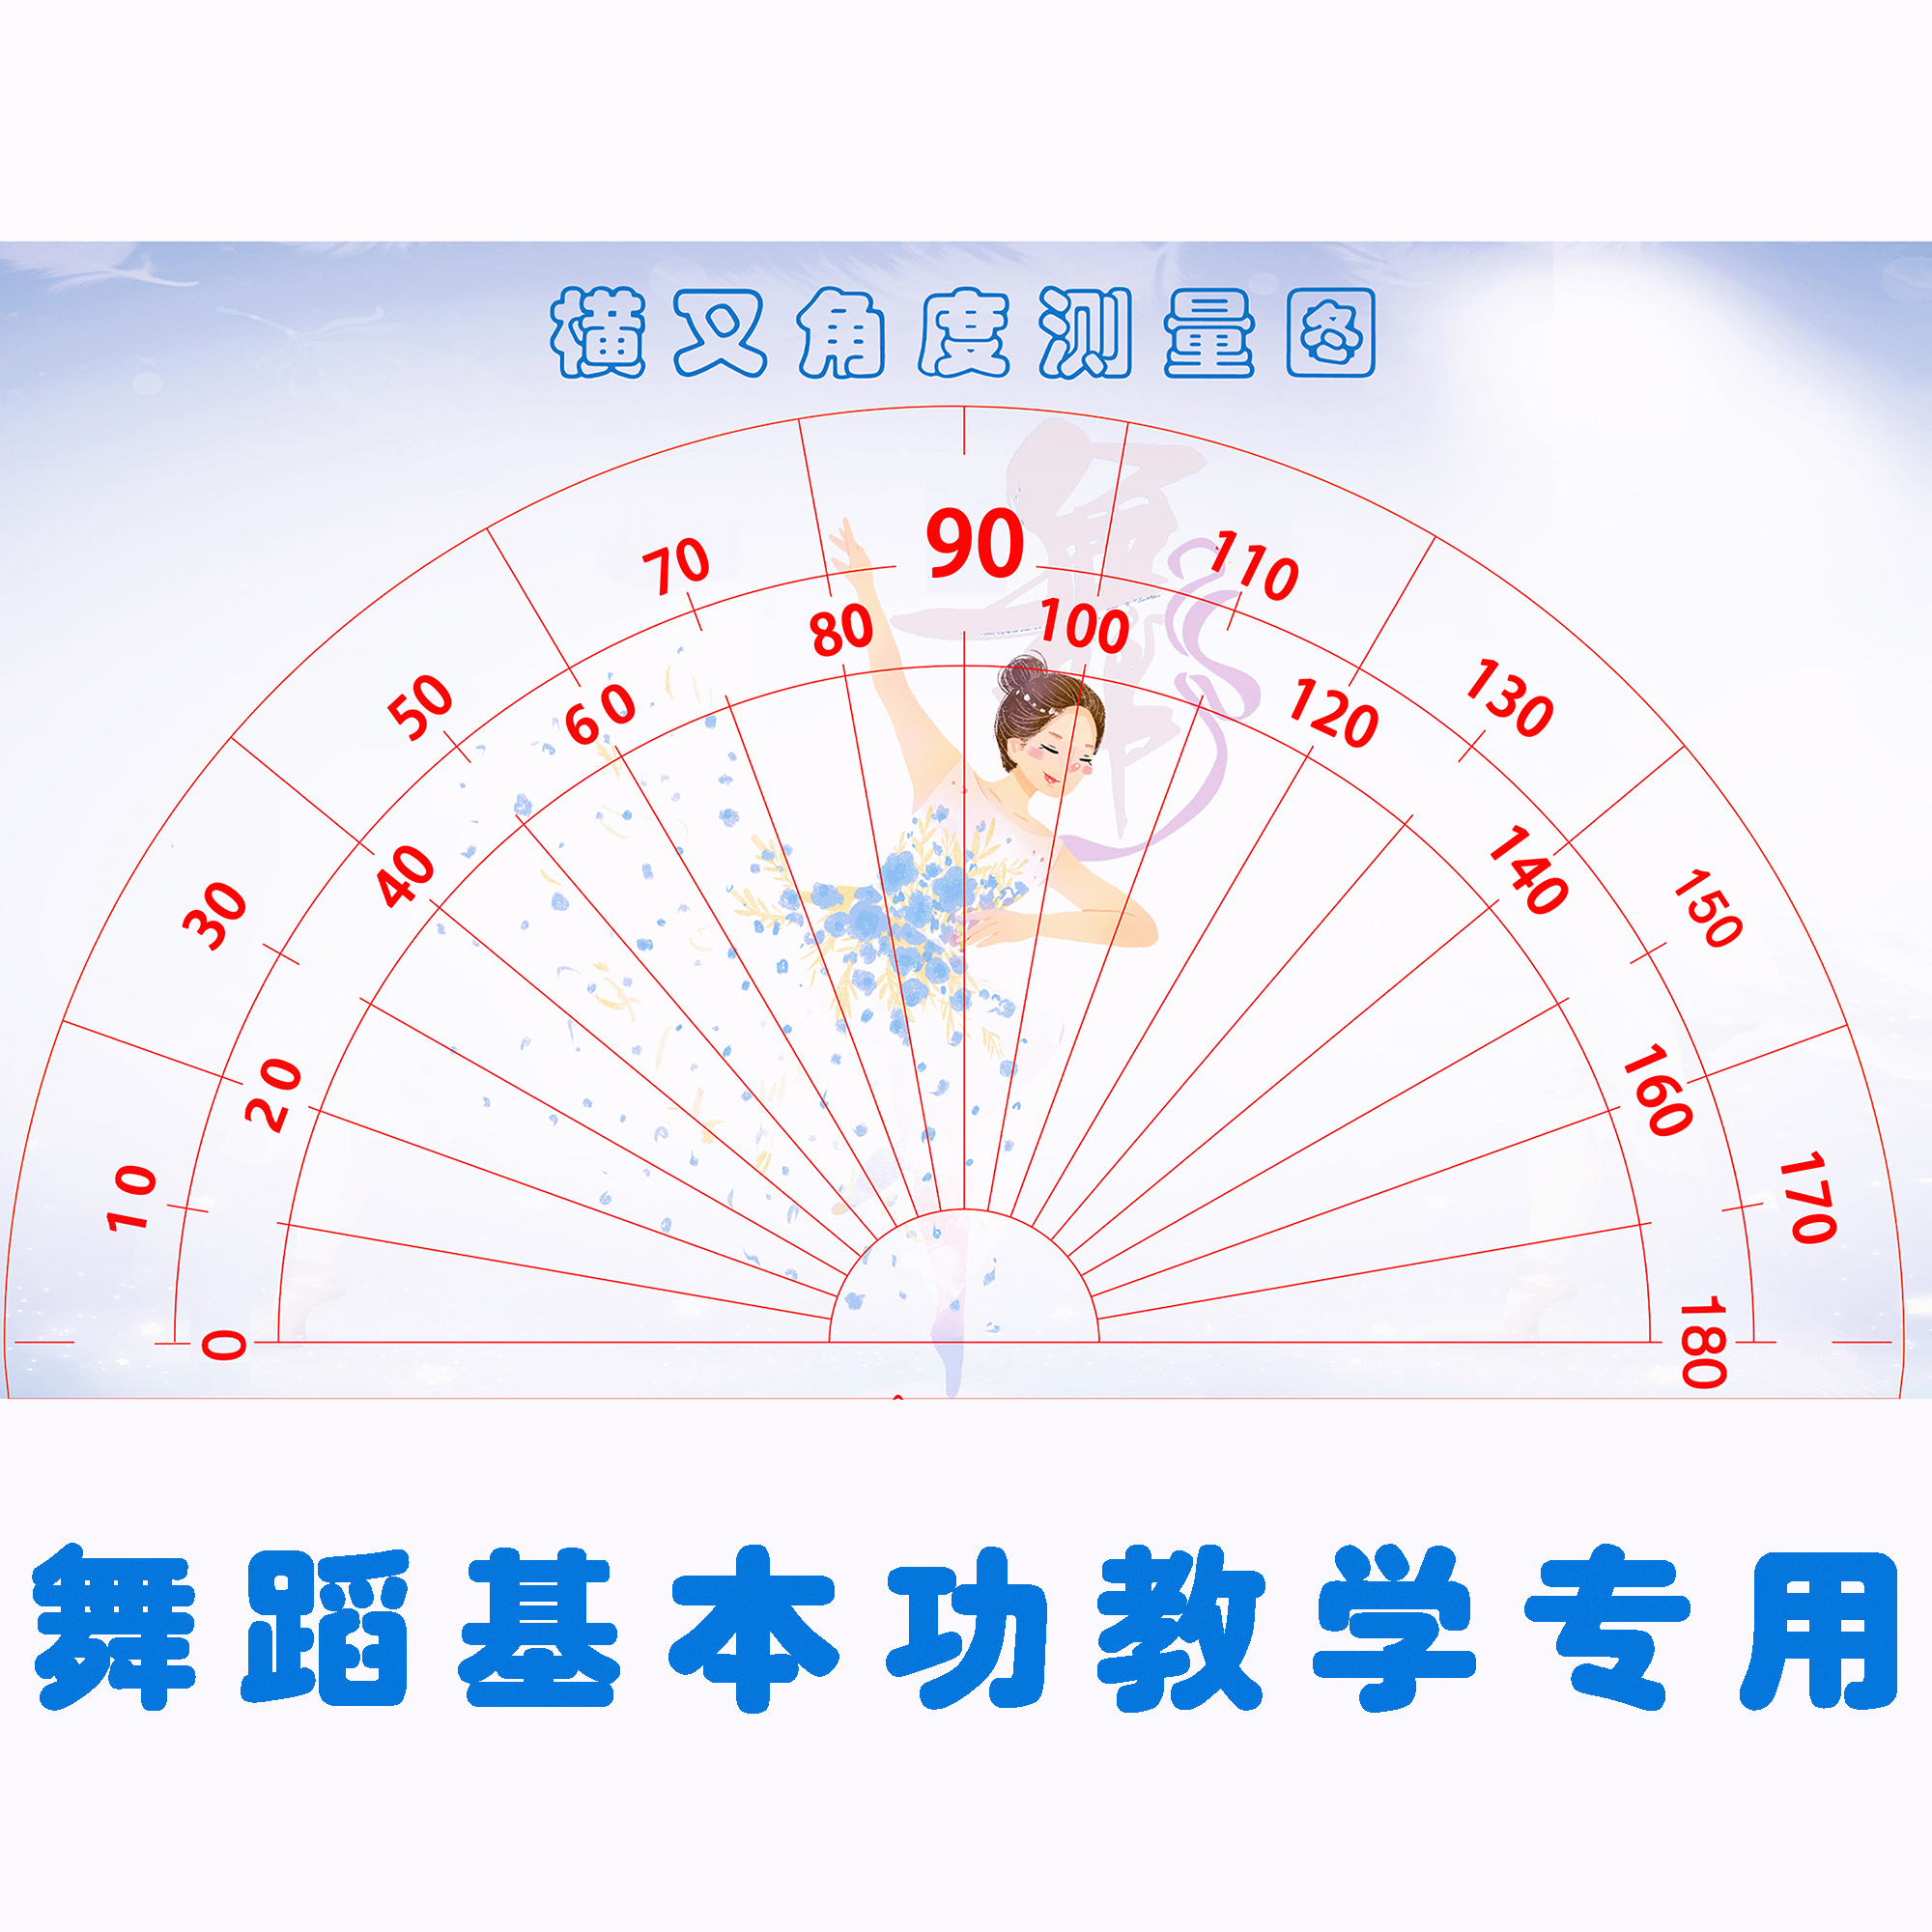 中国舞横叉角度测量图基本功教用具学芭蕾舞课室教室地面装饰地贴